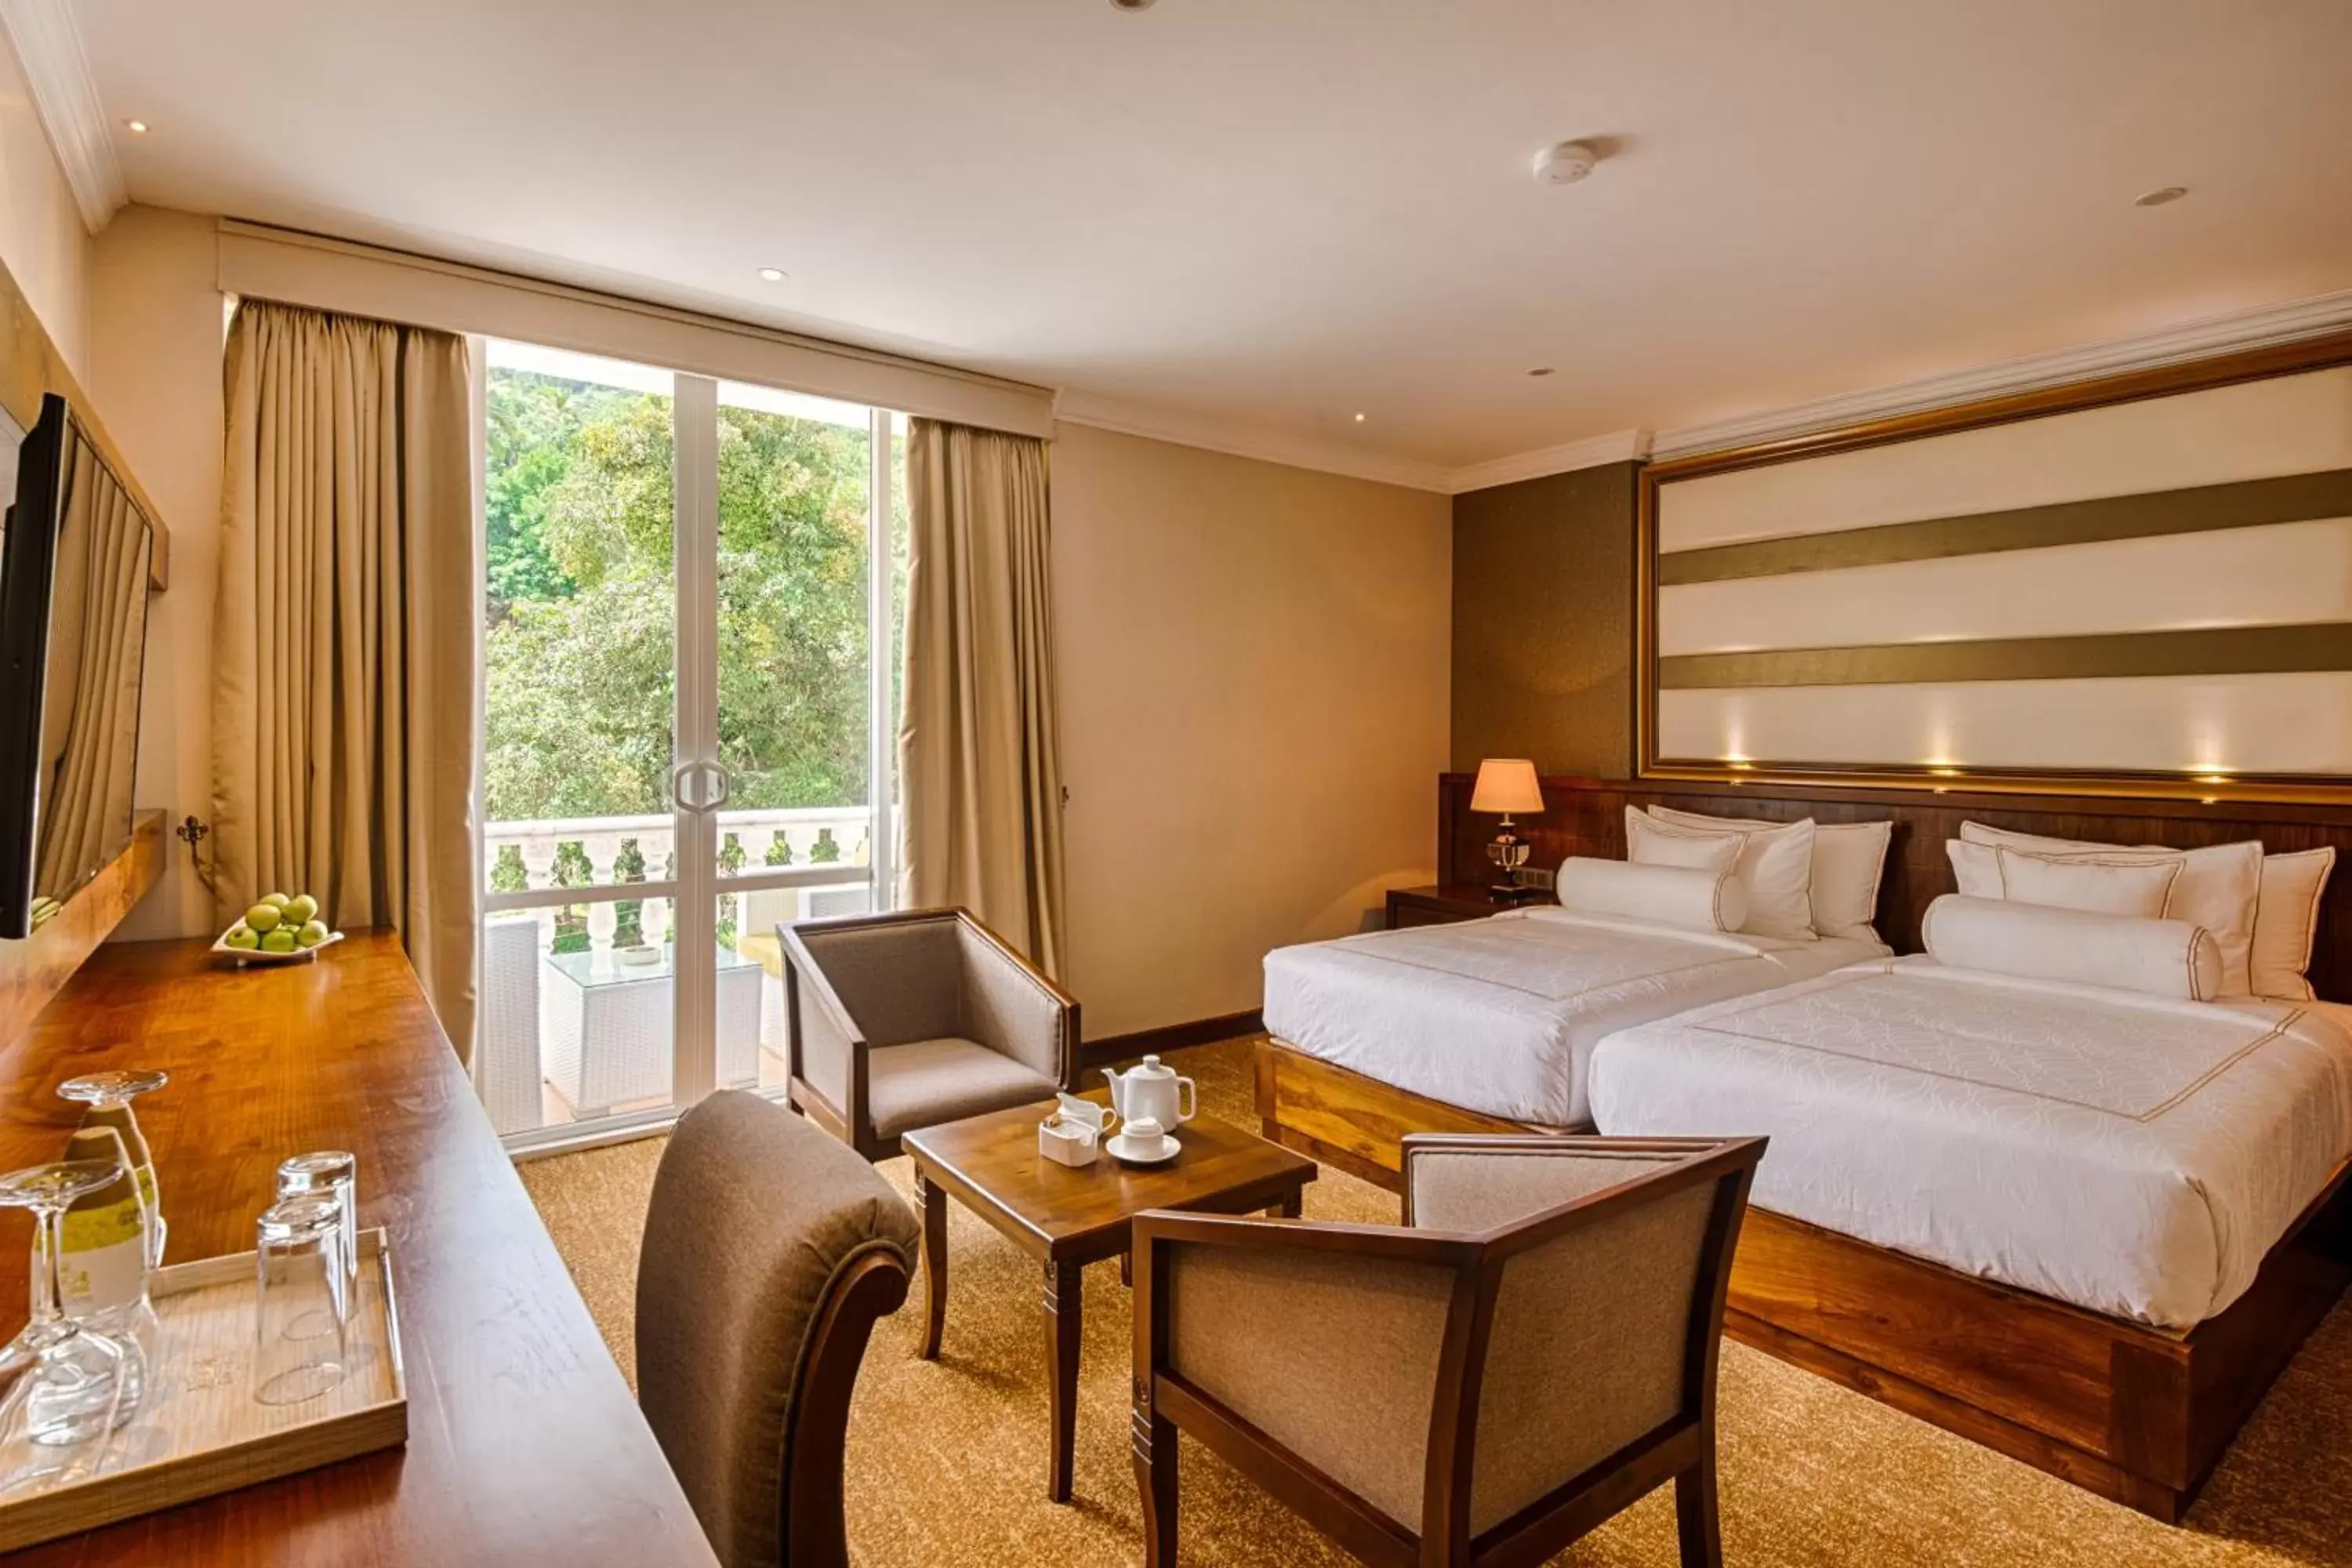 Bedroom in The Golden Crown Hotel